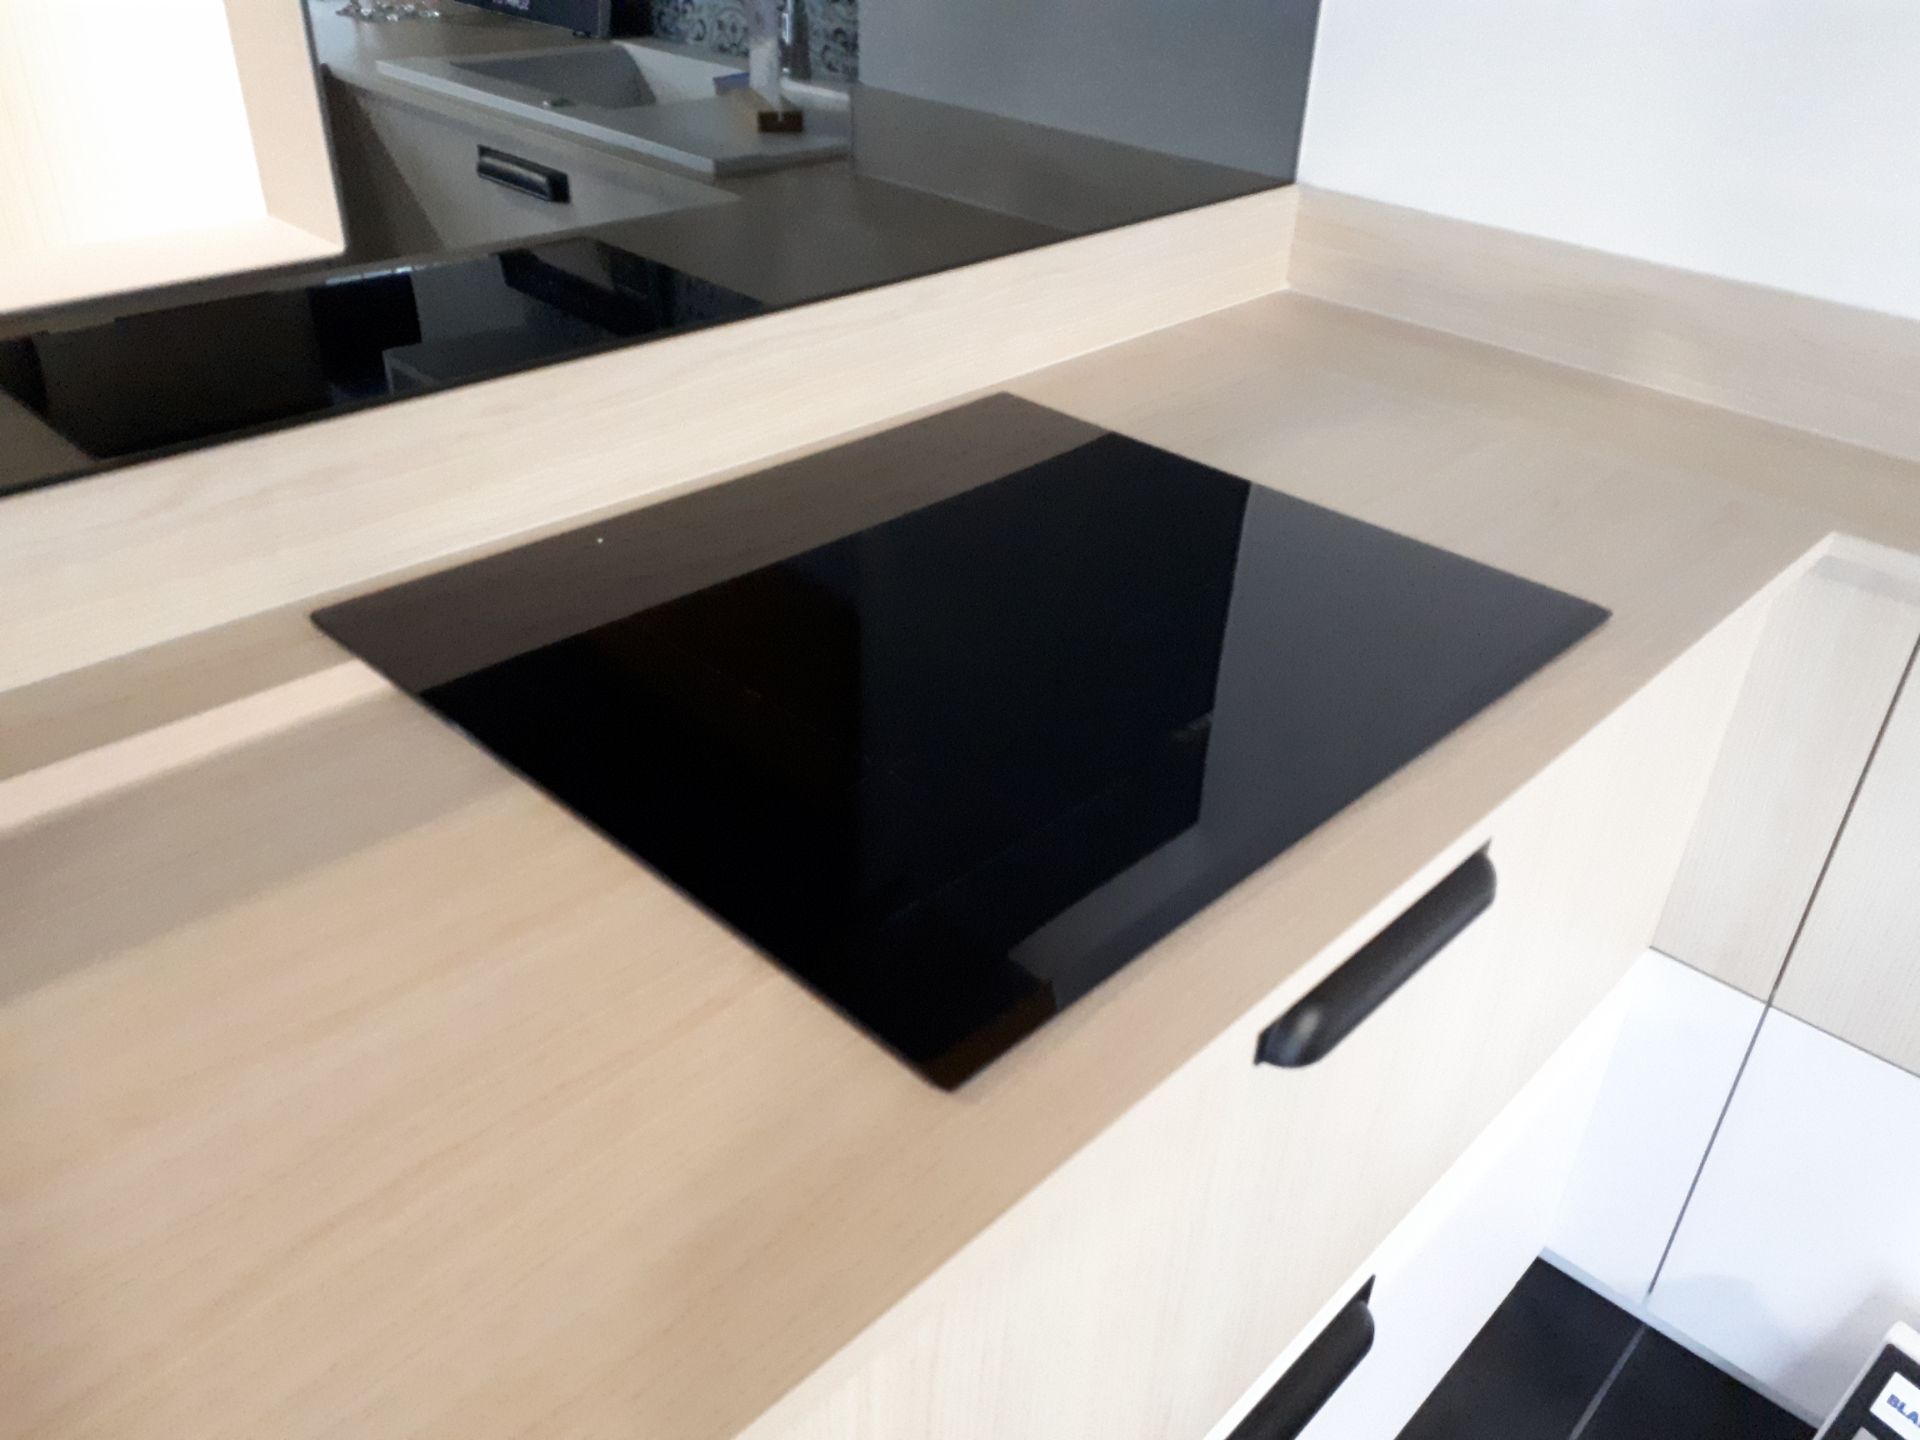 Schmidt Premium range display kitchen in Arcos Mix - Image 7 of 8